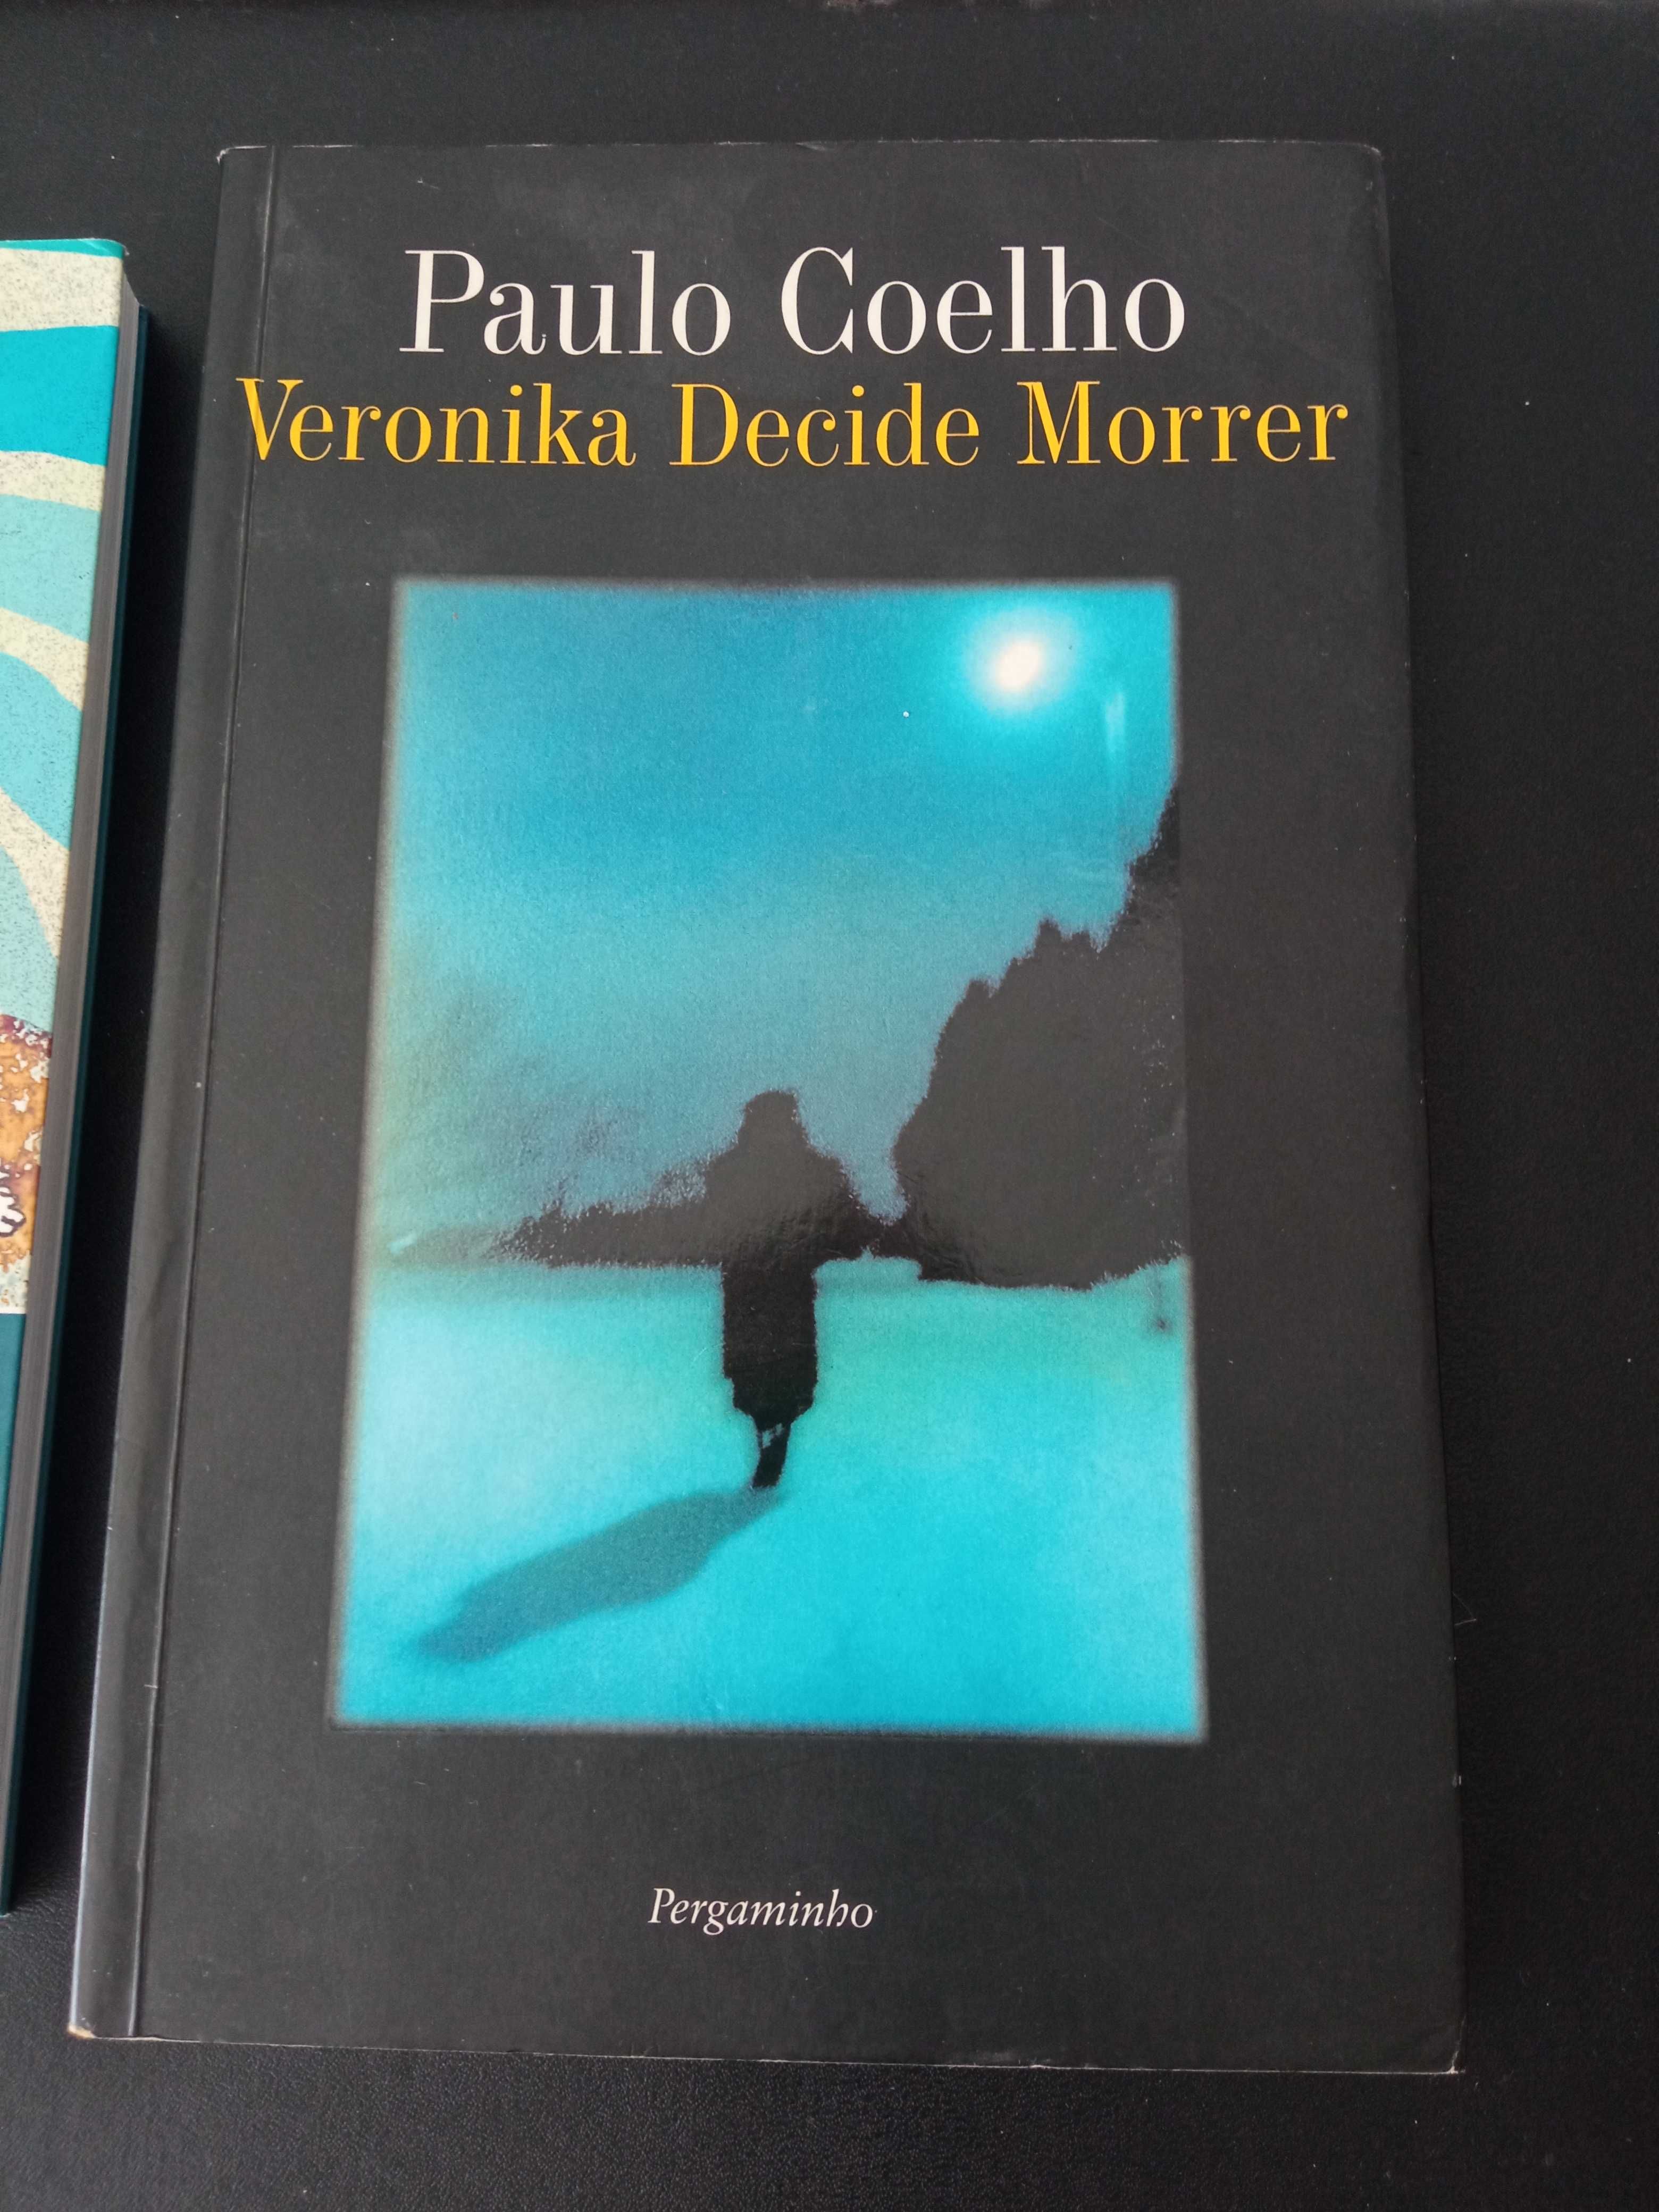 2 Livros Paulo Coelho -"Veronika Decide Morrer"+"Na Margem do Rio"